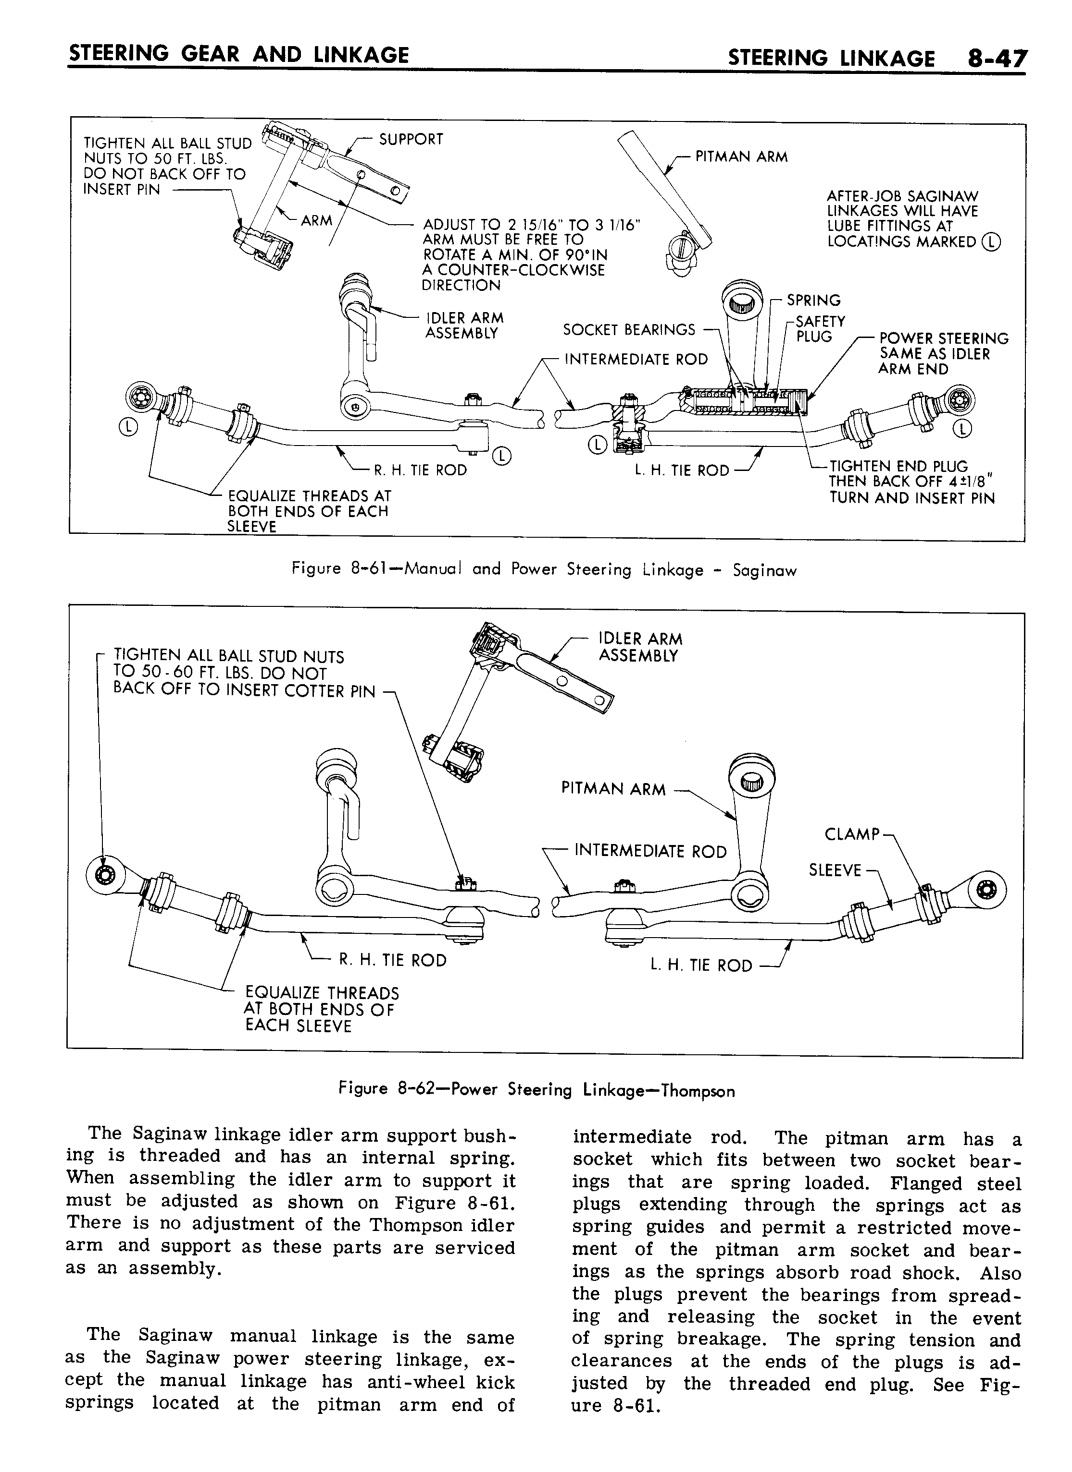 n_08 1961 Buick Shop Manual - Steering-047-047.jpg